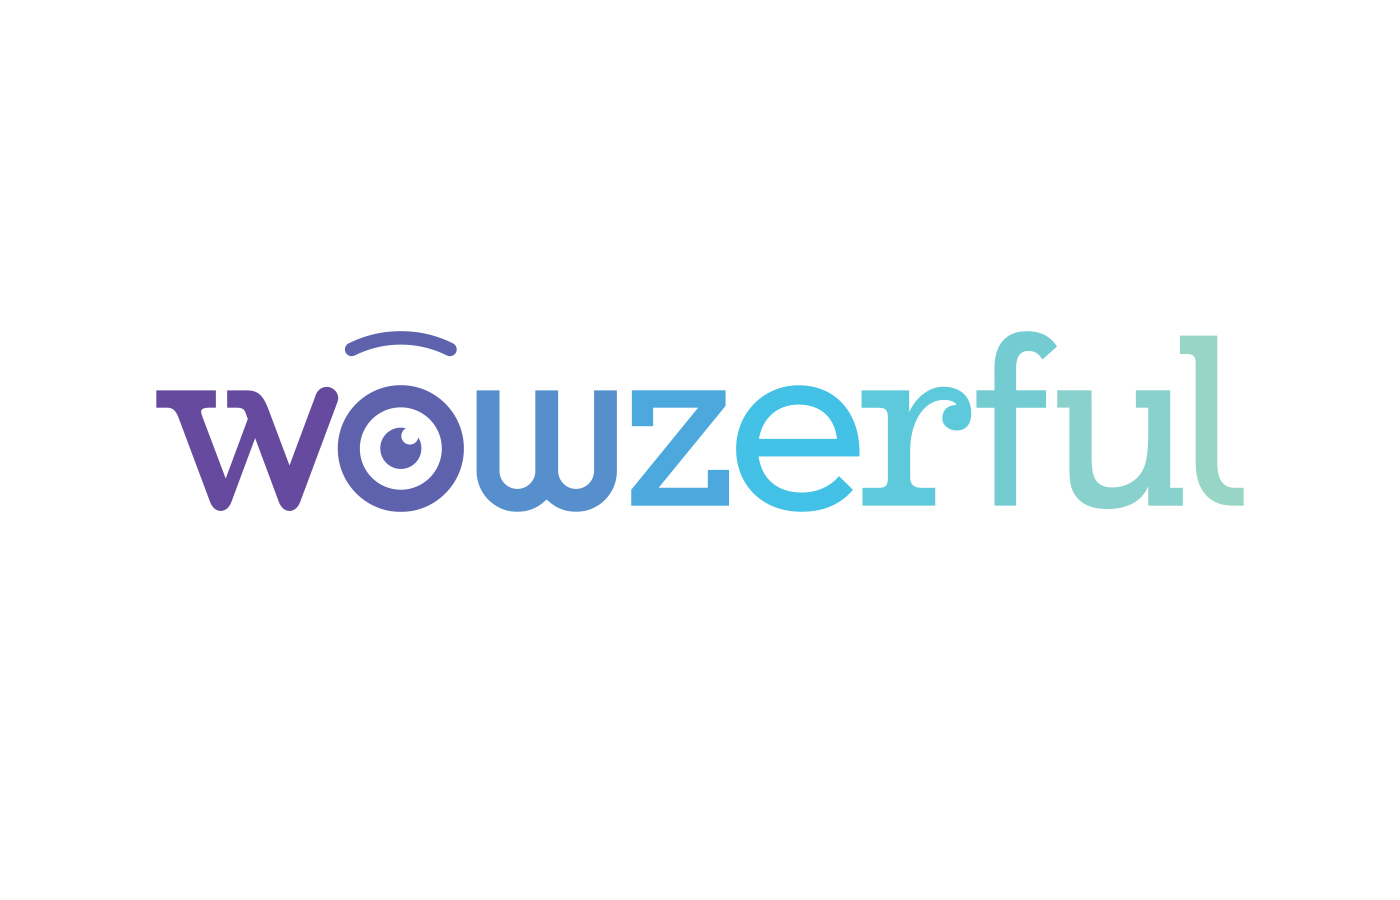 wowzerful_1